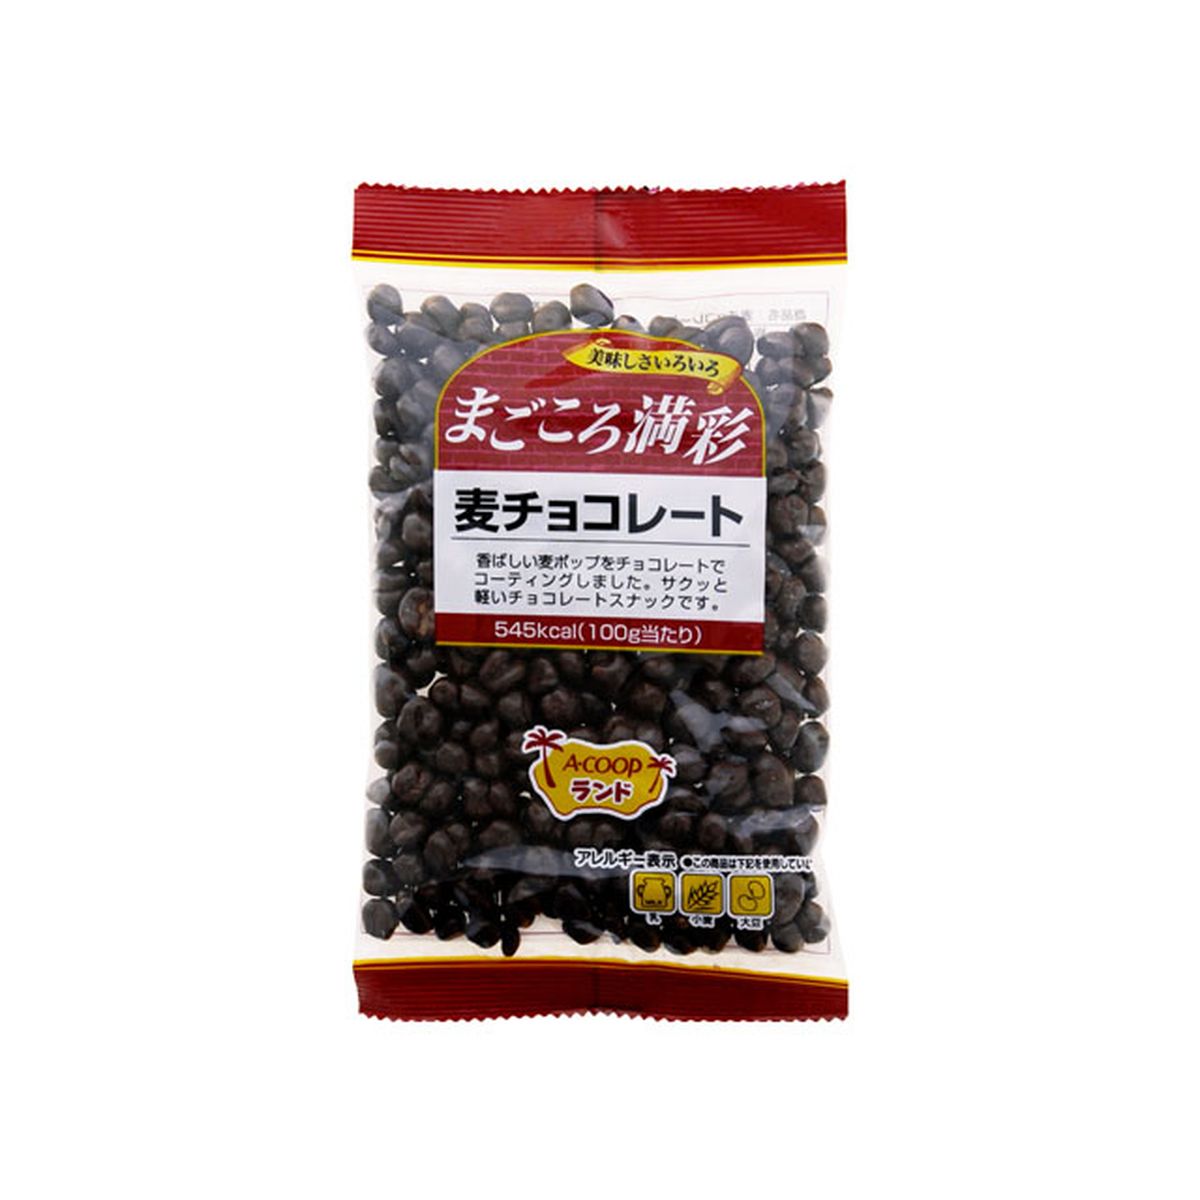 【12個入り】寺沢製菓 まごころ満彩 麦チョコレート 70g